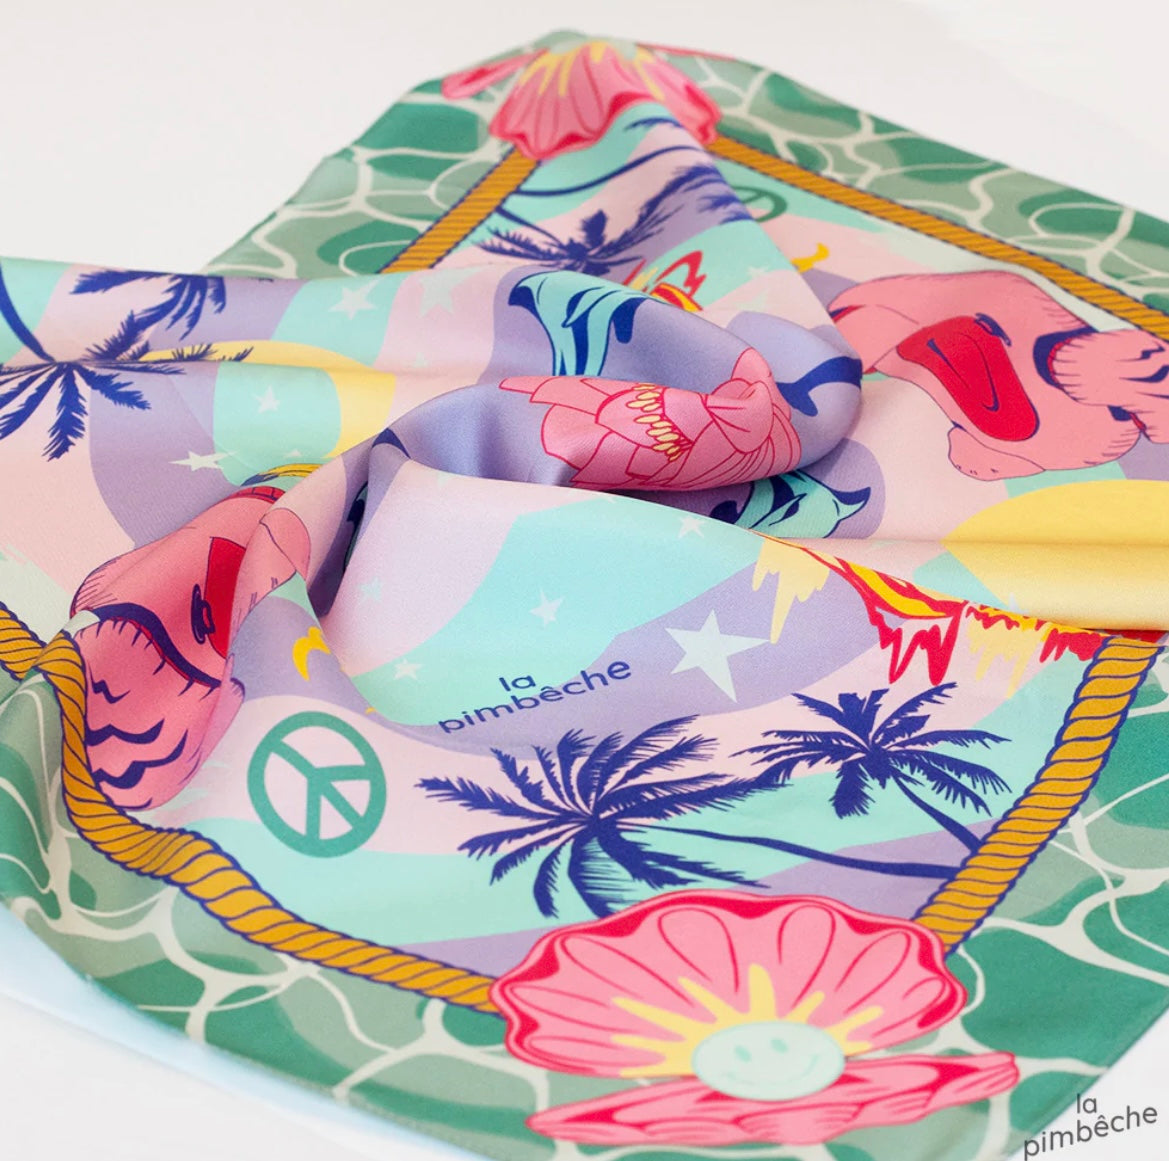 La Pimbêche - teal water silk scarves